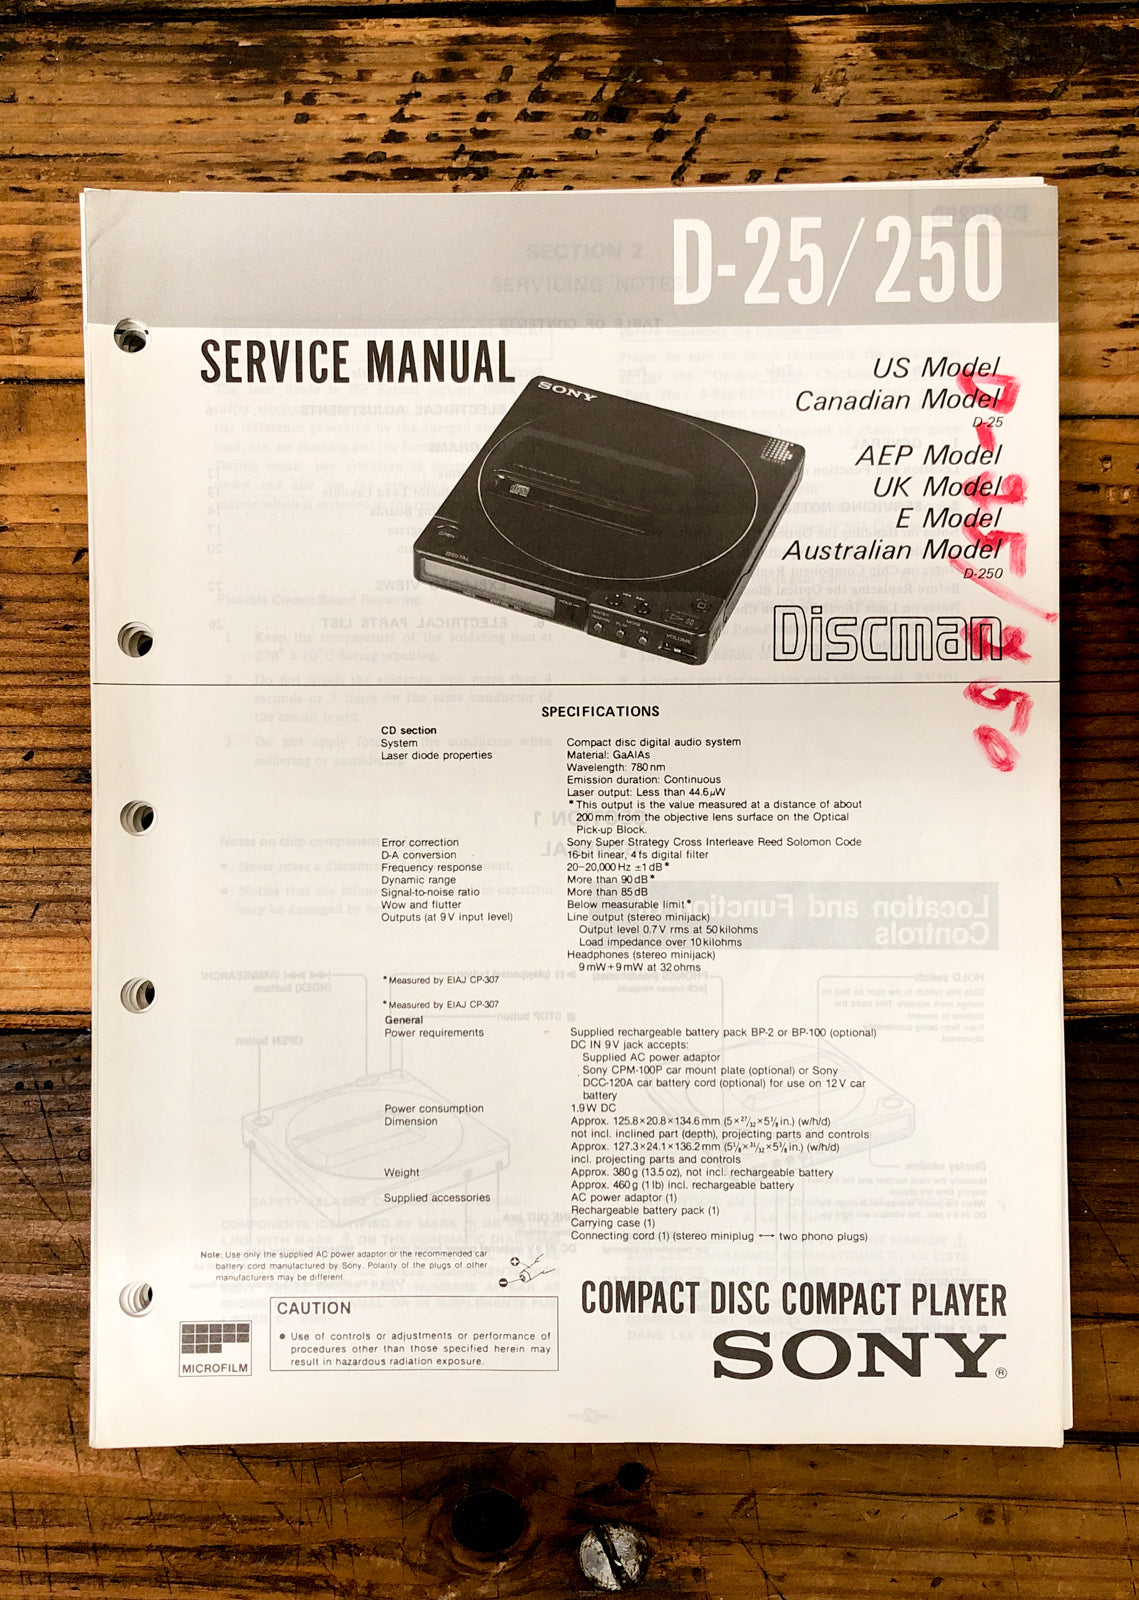 Sony D-25 D-250 CD Player / Discman  Service Manual *Original*